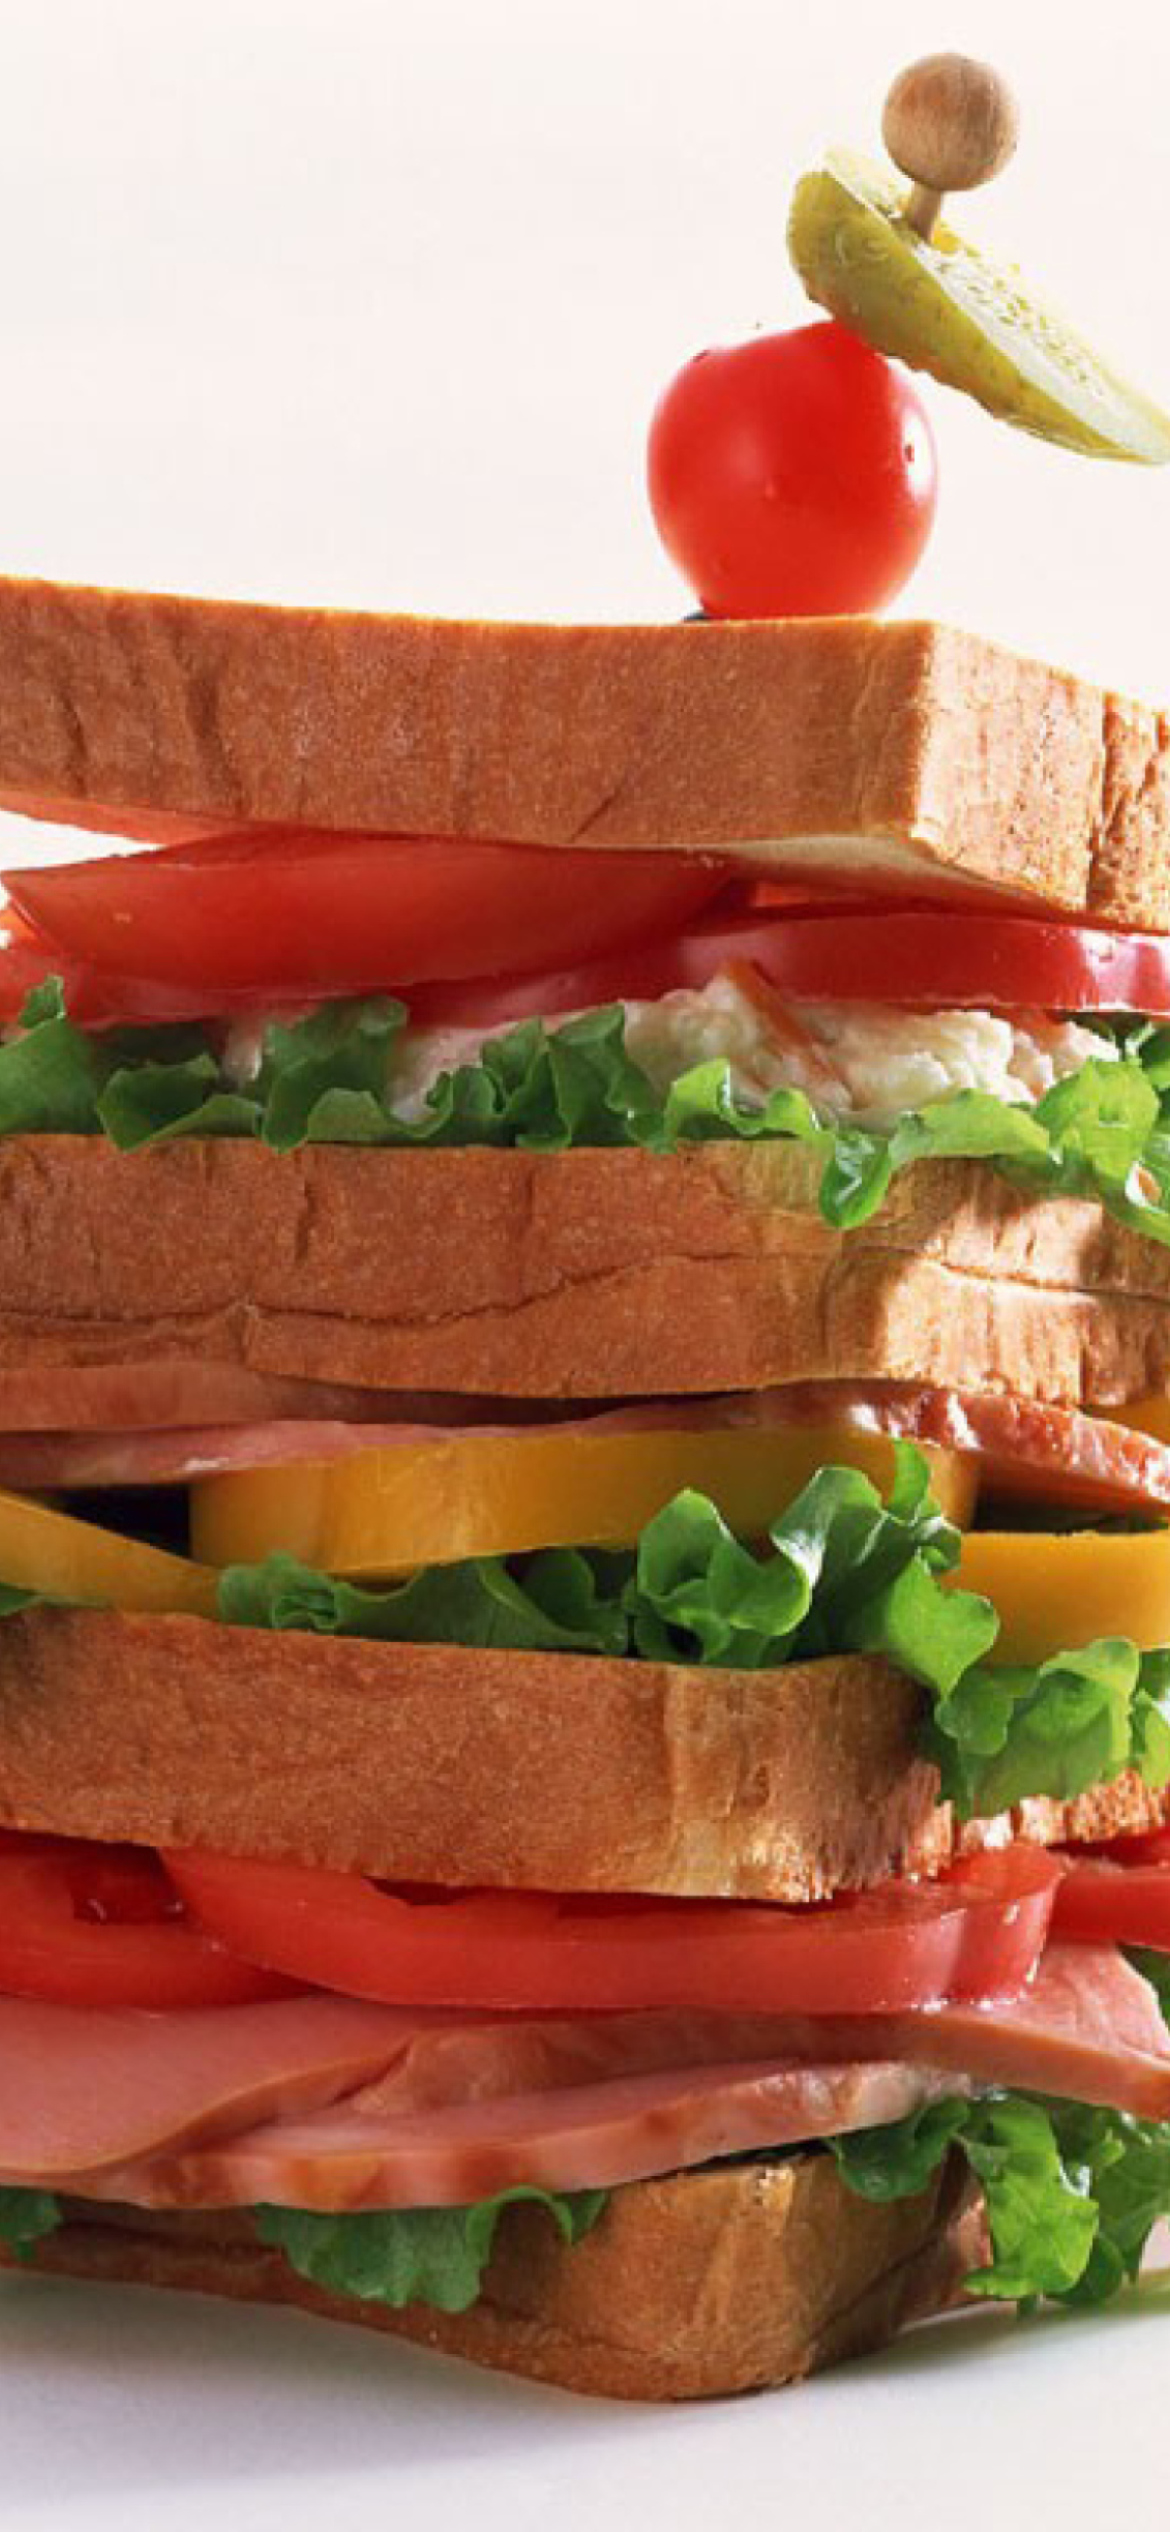 Breakfast Sandwich wallpaper 1170x2532